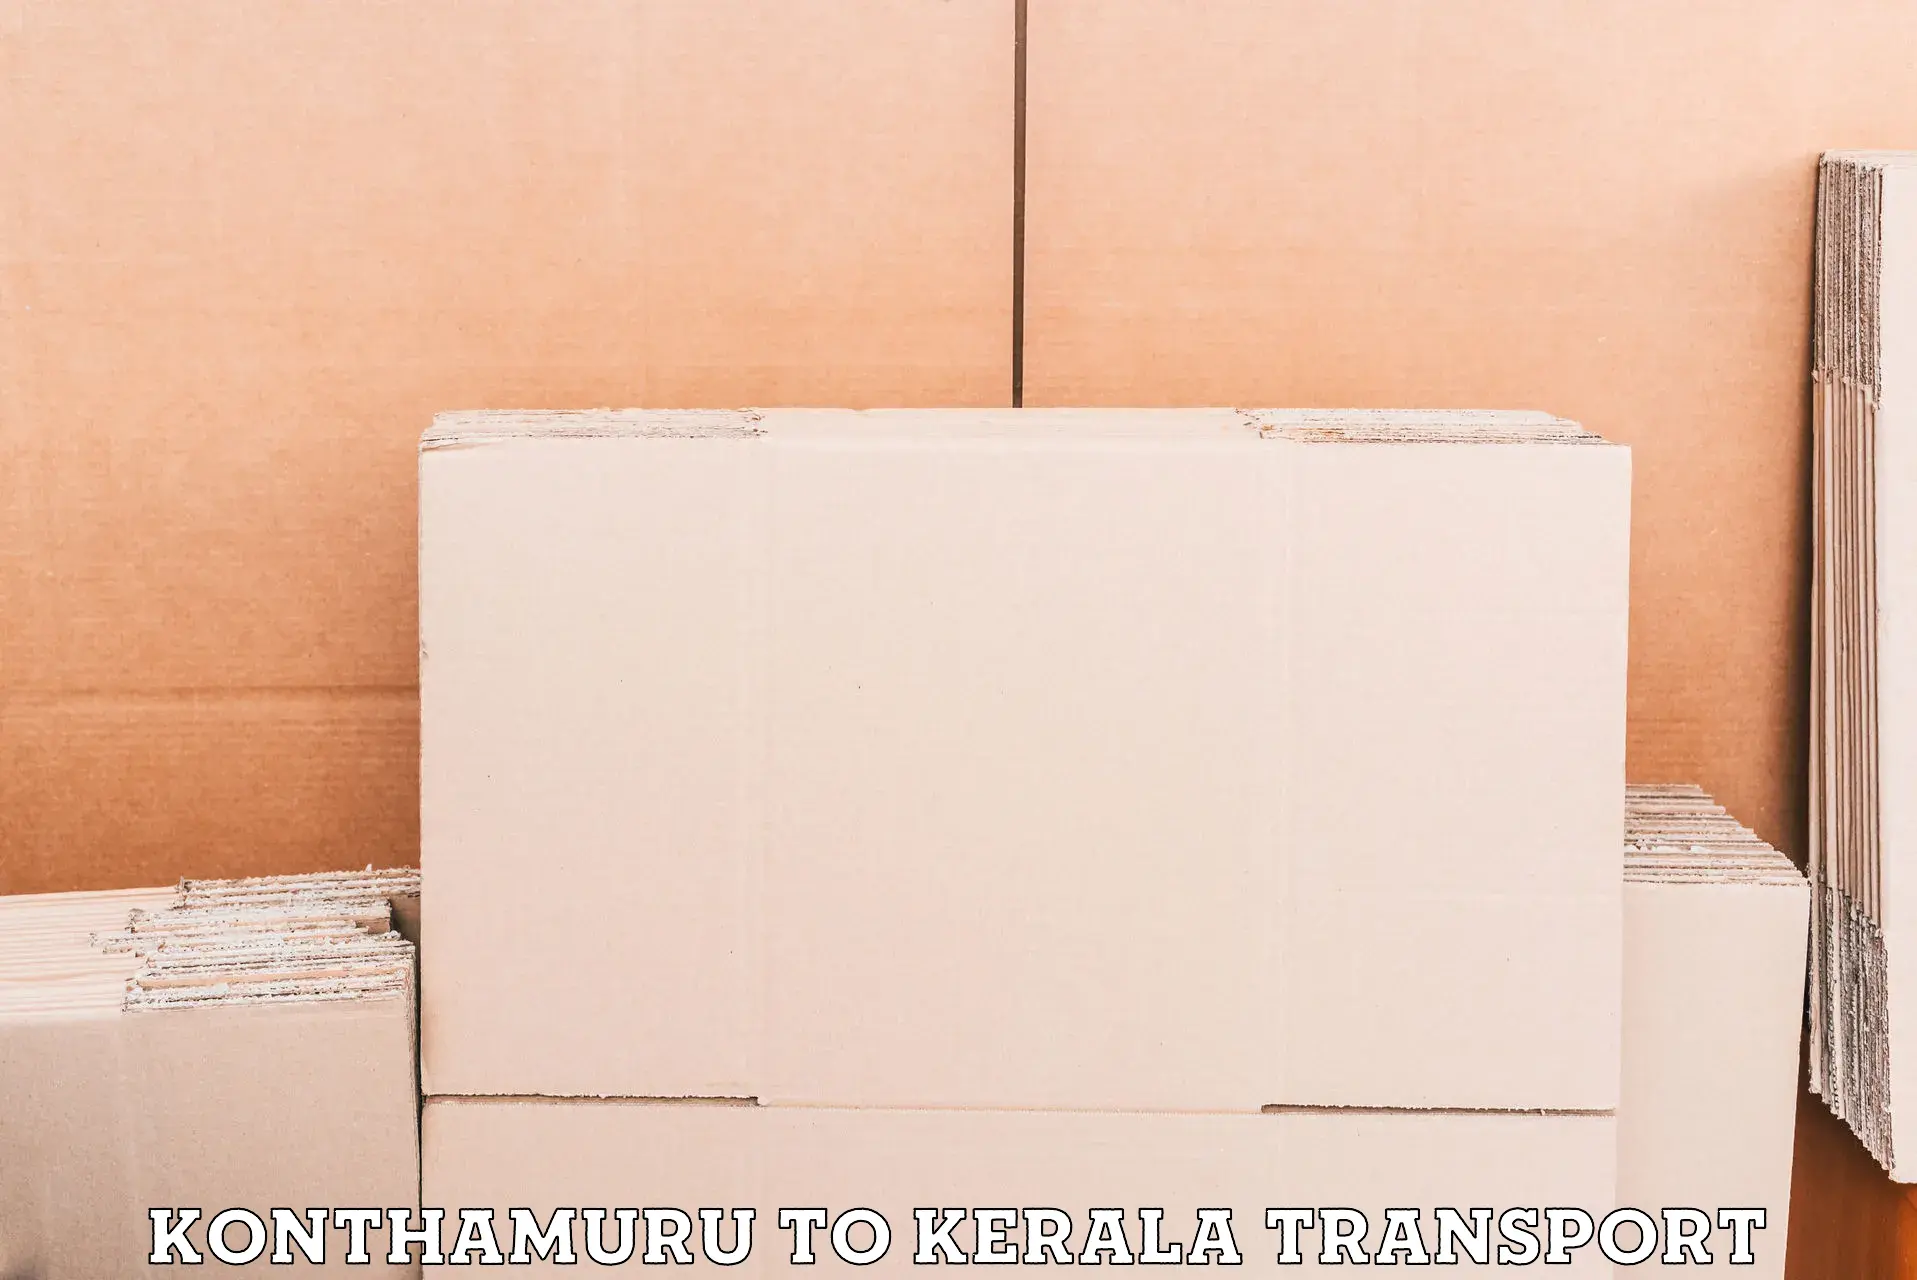 Online transport booking in Konthamuru to Mavelikara